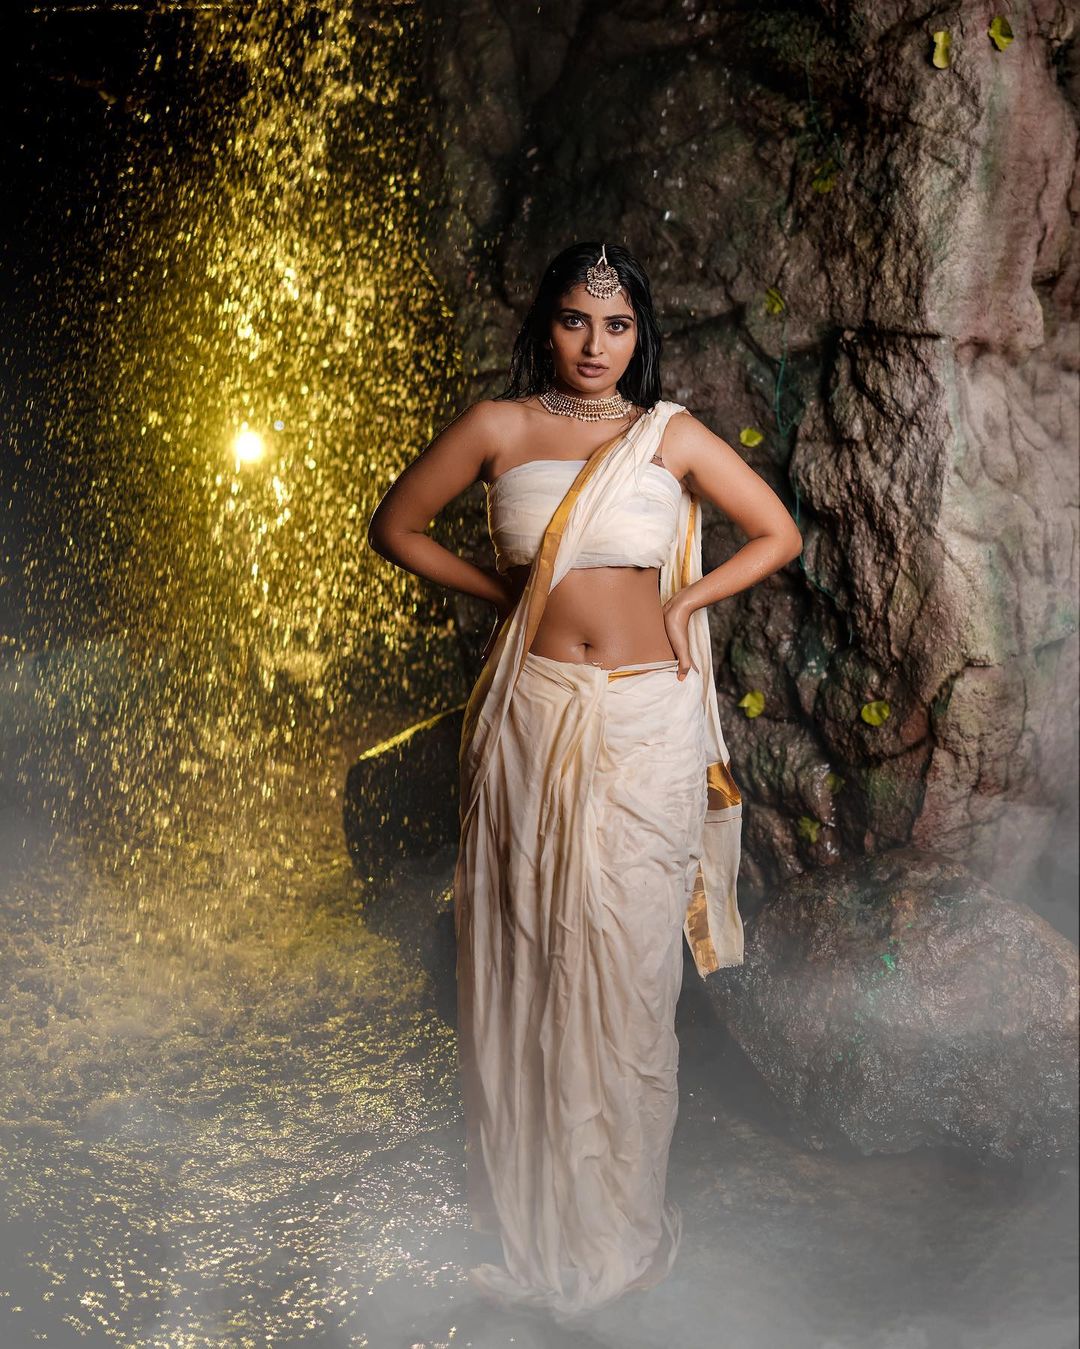 TeluguISM - Ananya Nagalla